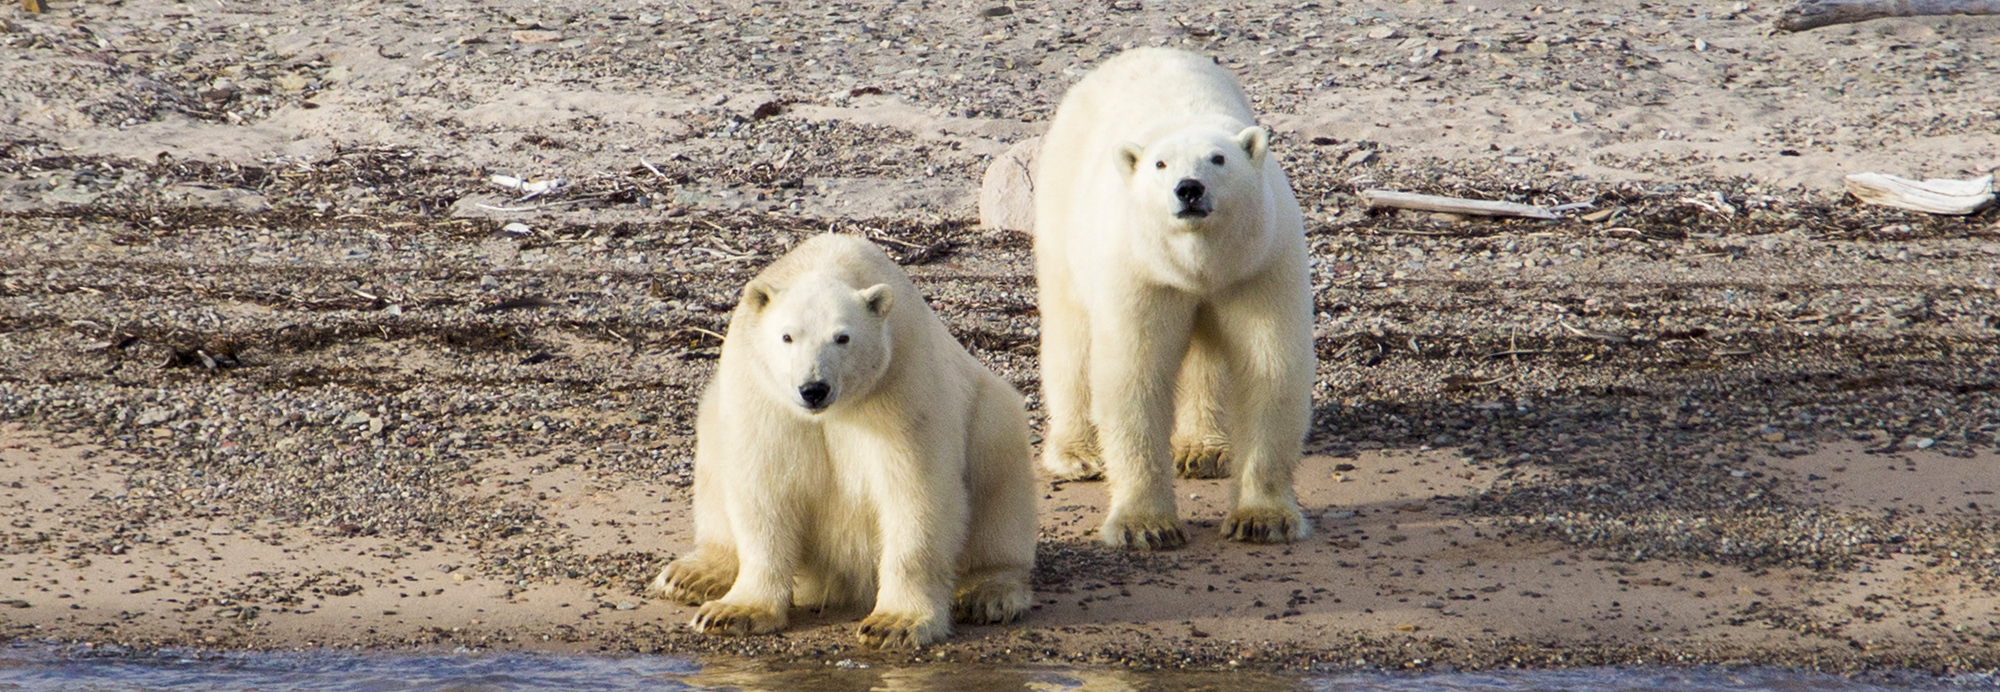 Groenland - Polar bears, Ella Island